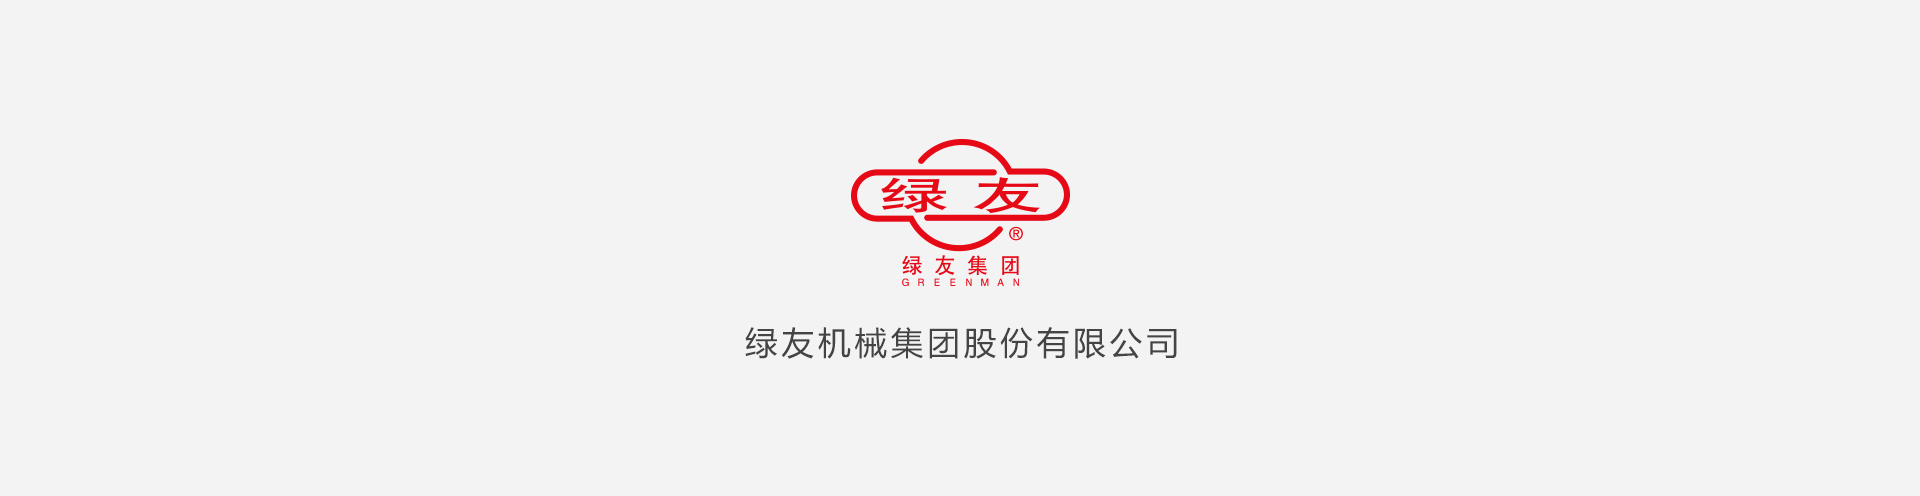 金沙游戏app(中国)集团股份有限公司